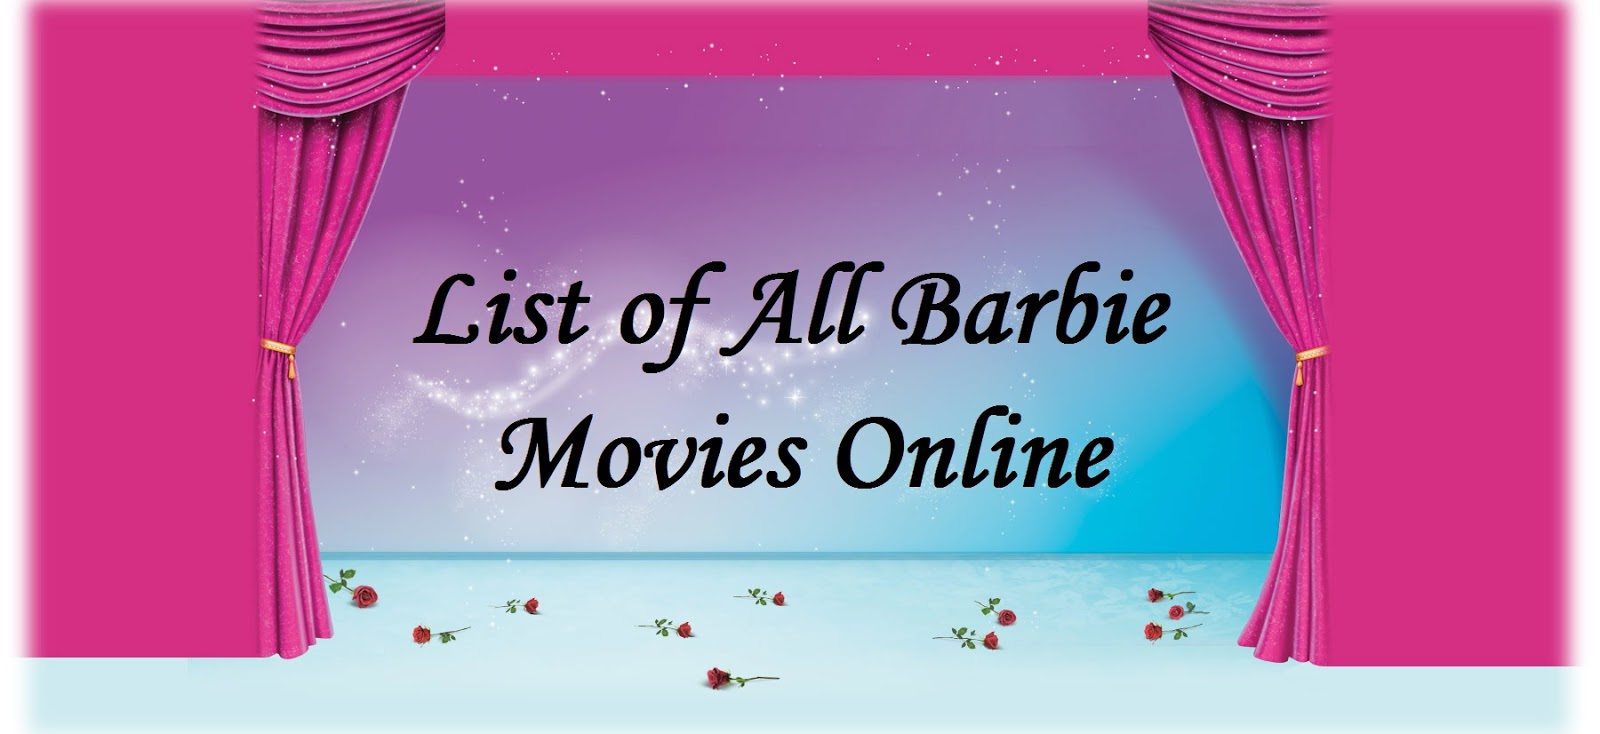 list of all barbie movies online in urdu